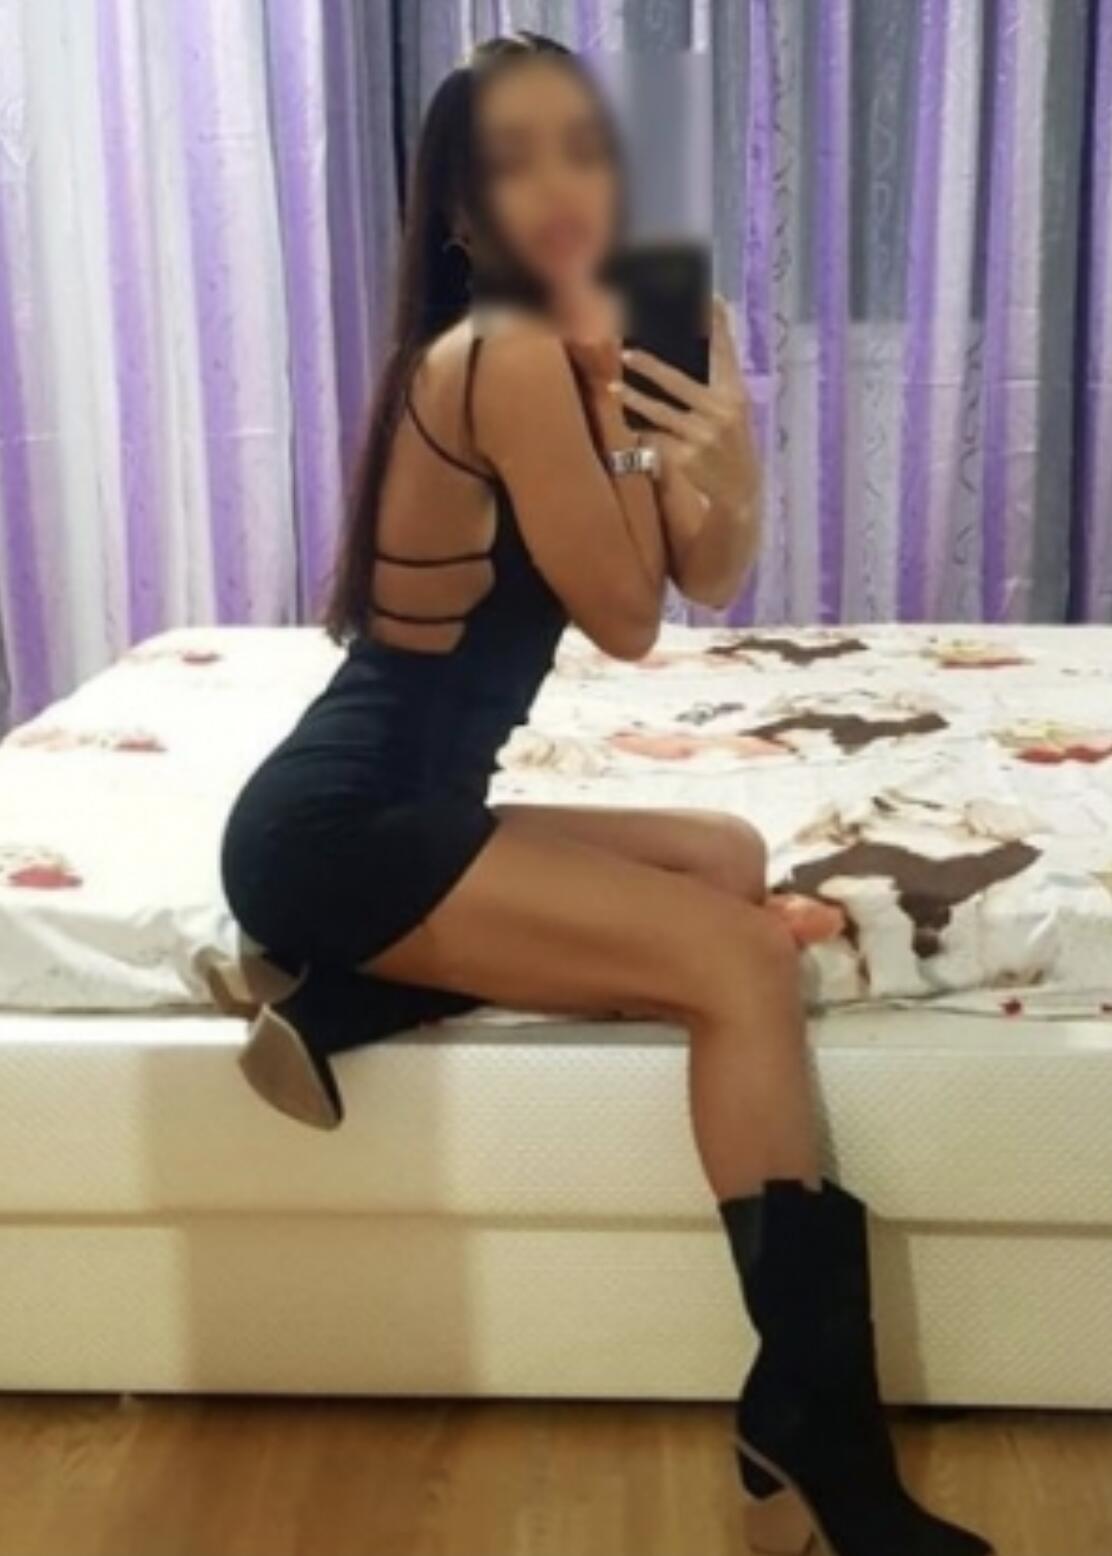 Проститутка Карина, фото 3, тел: 0509335238. В центре города - Киев